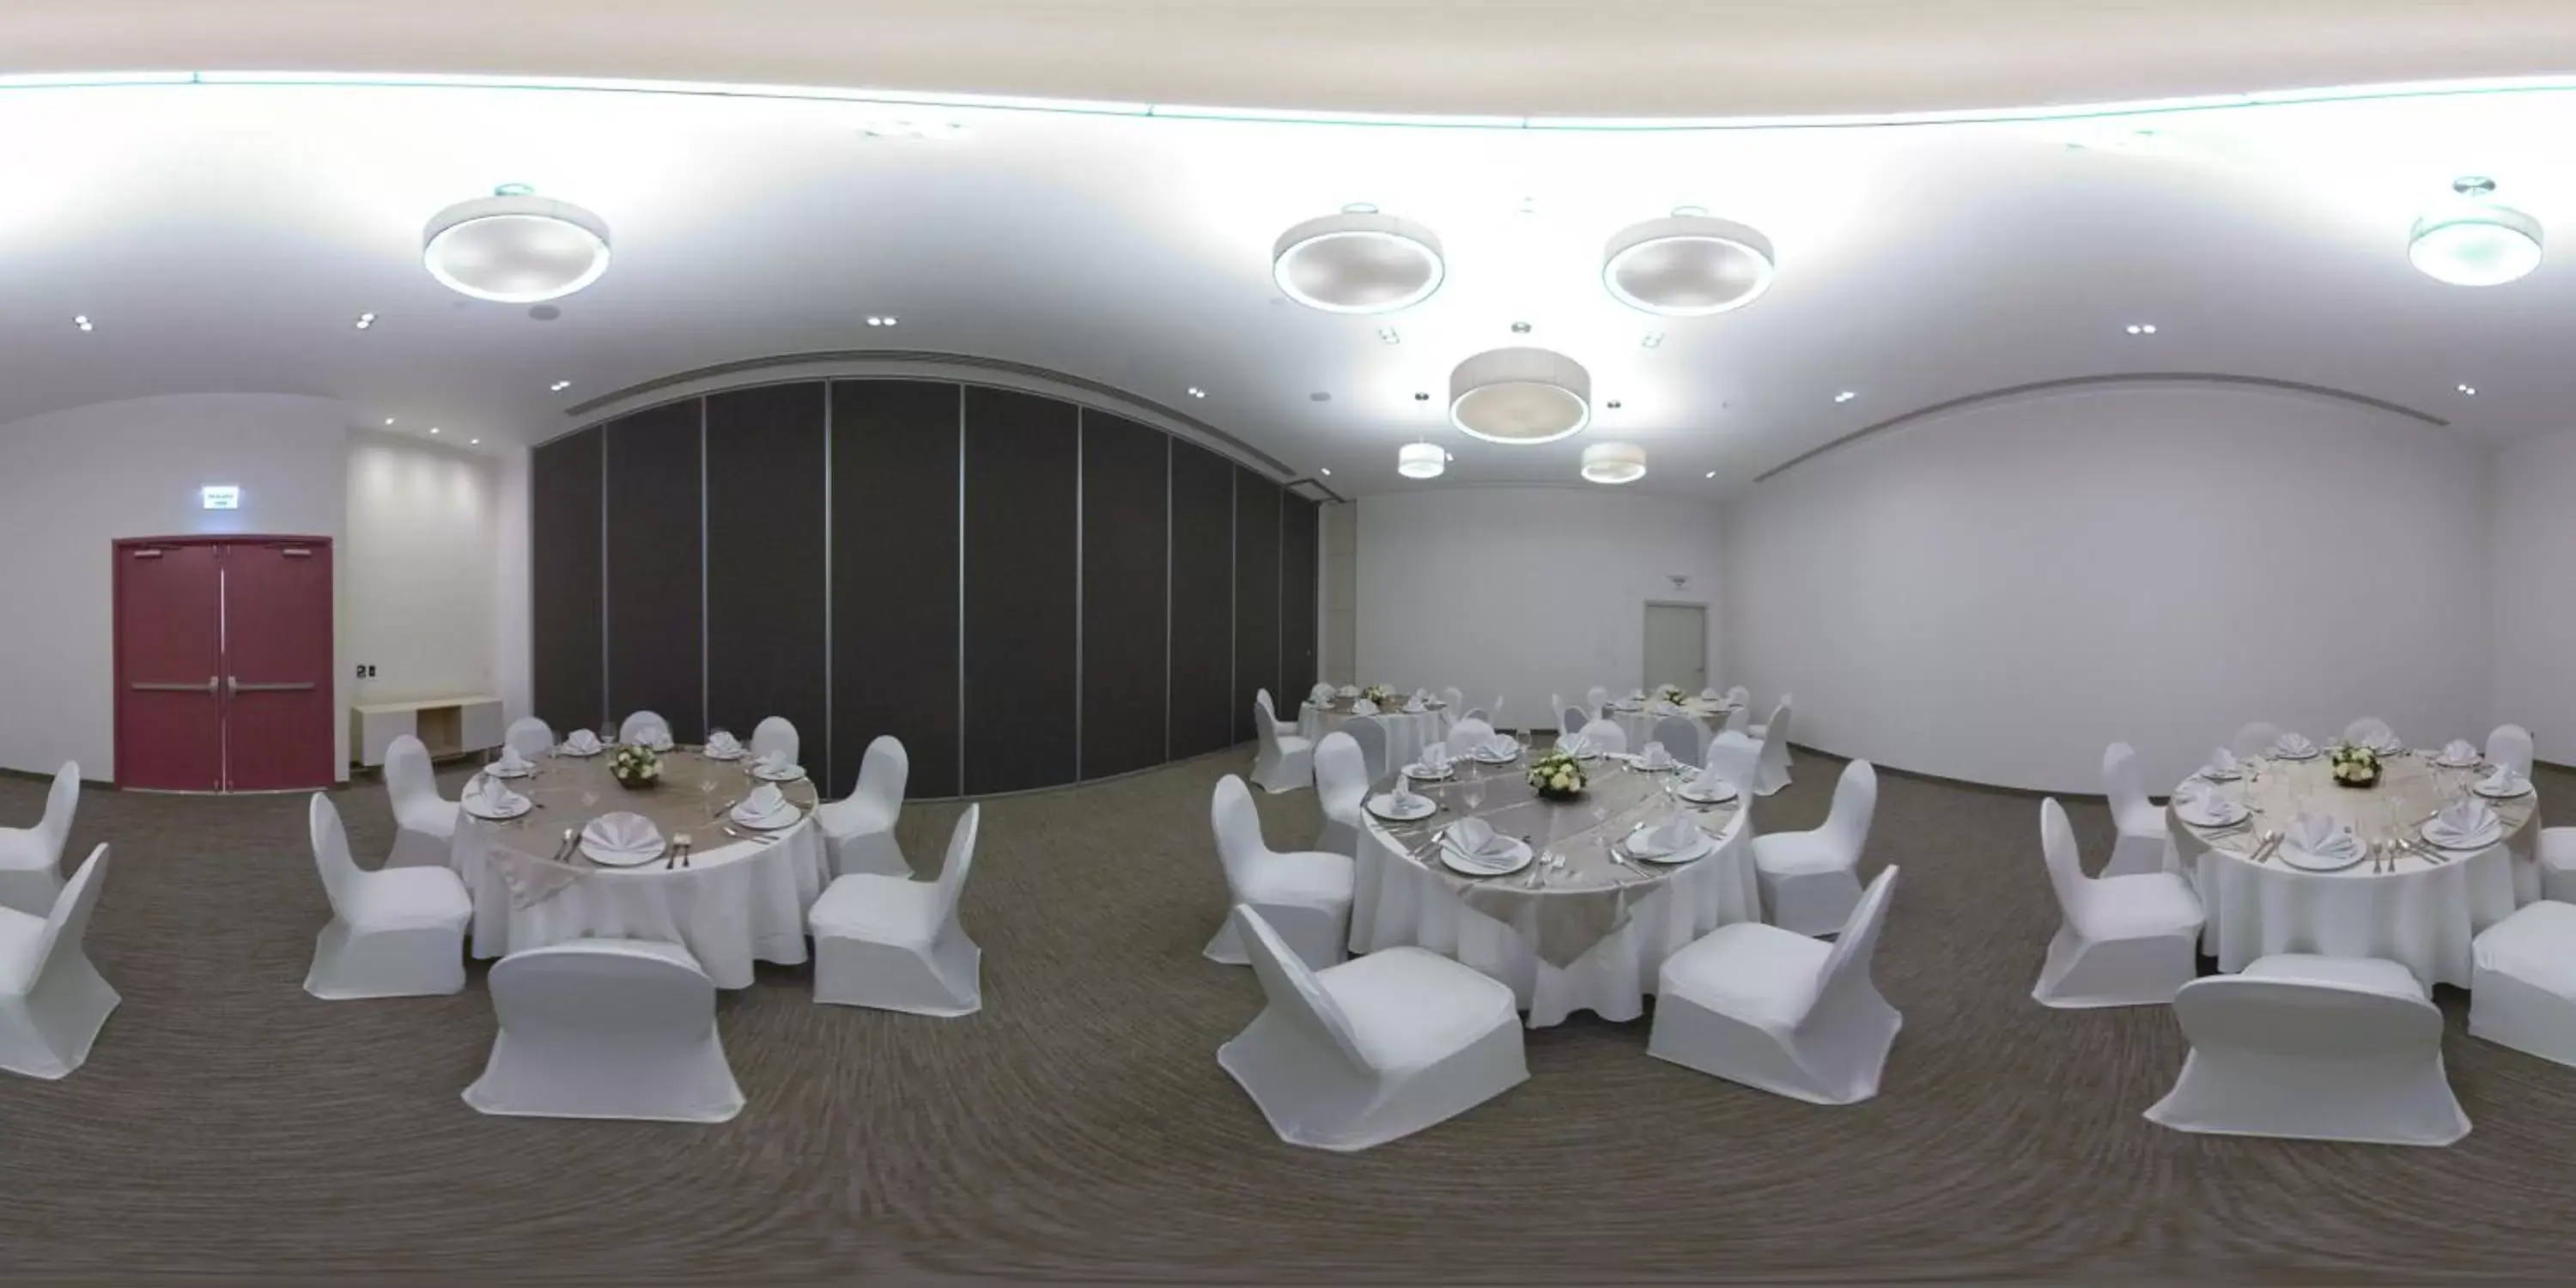 Meeting/conference room, Banquet Facilities in Fiesta Inn Parque Puebla